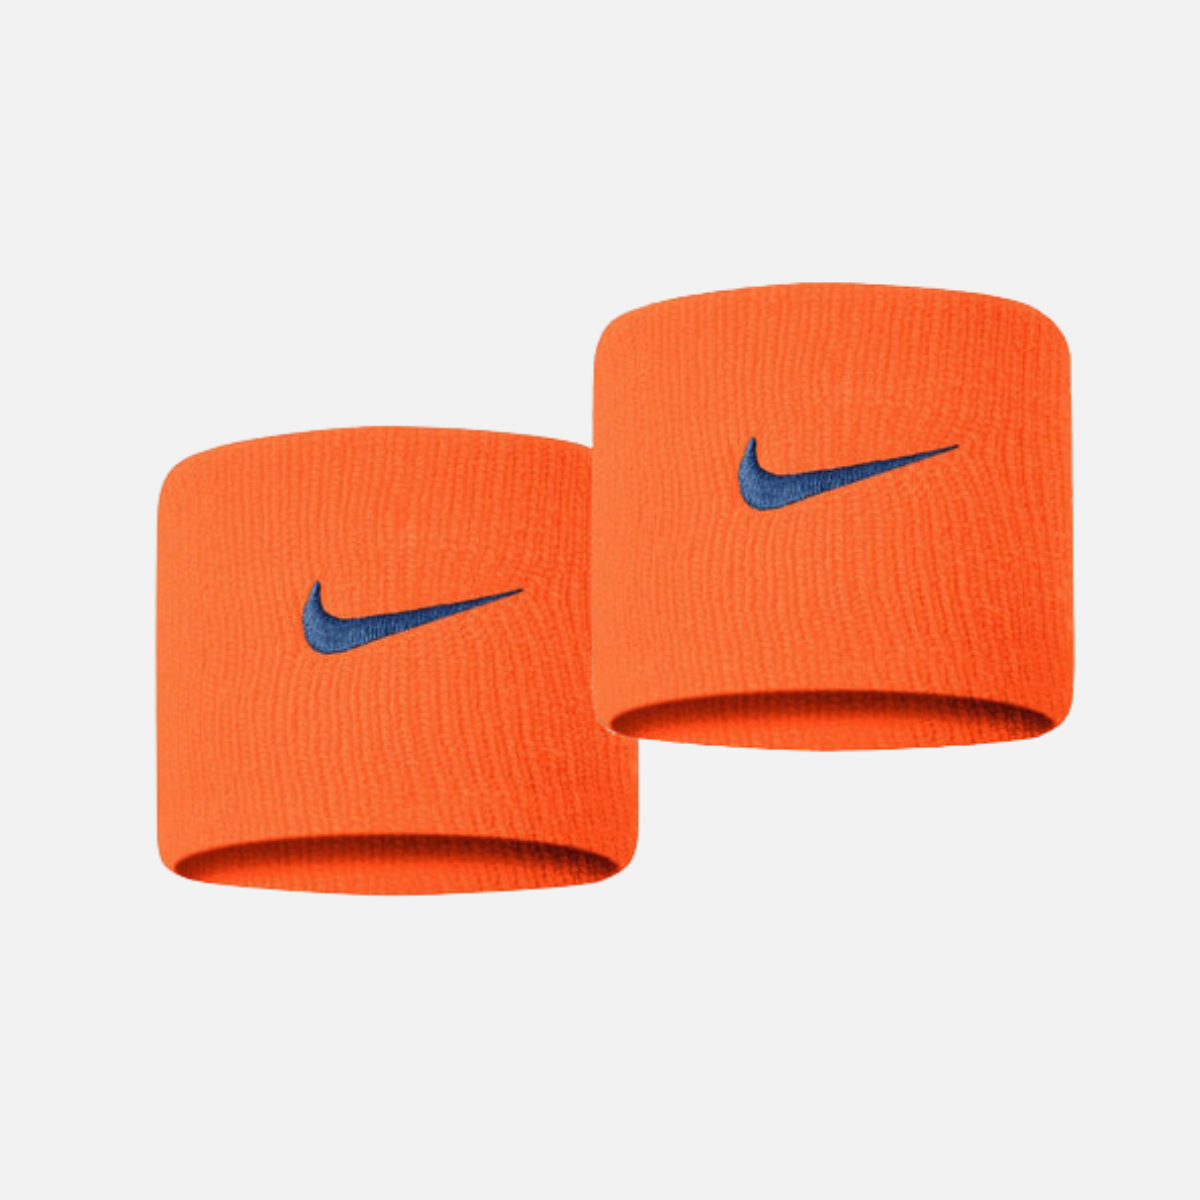 Nike Swoosh unisex Wristband -orange/navy blue